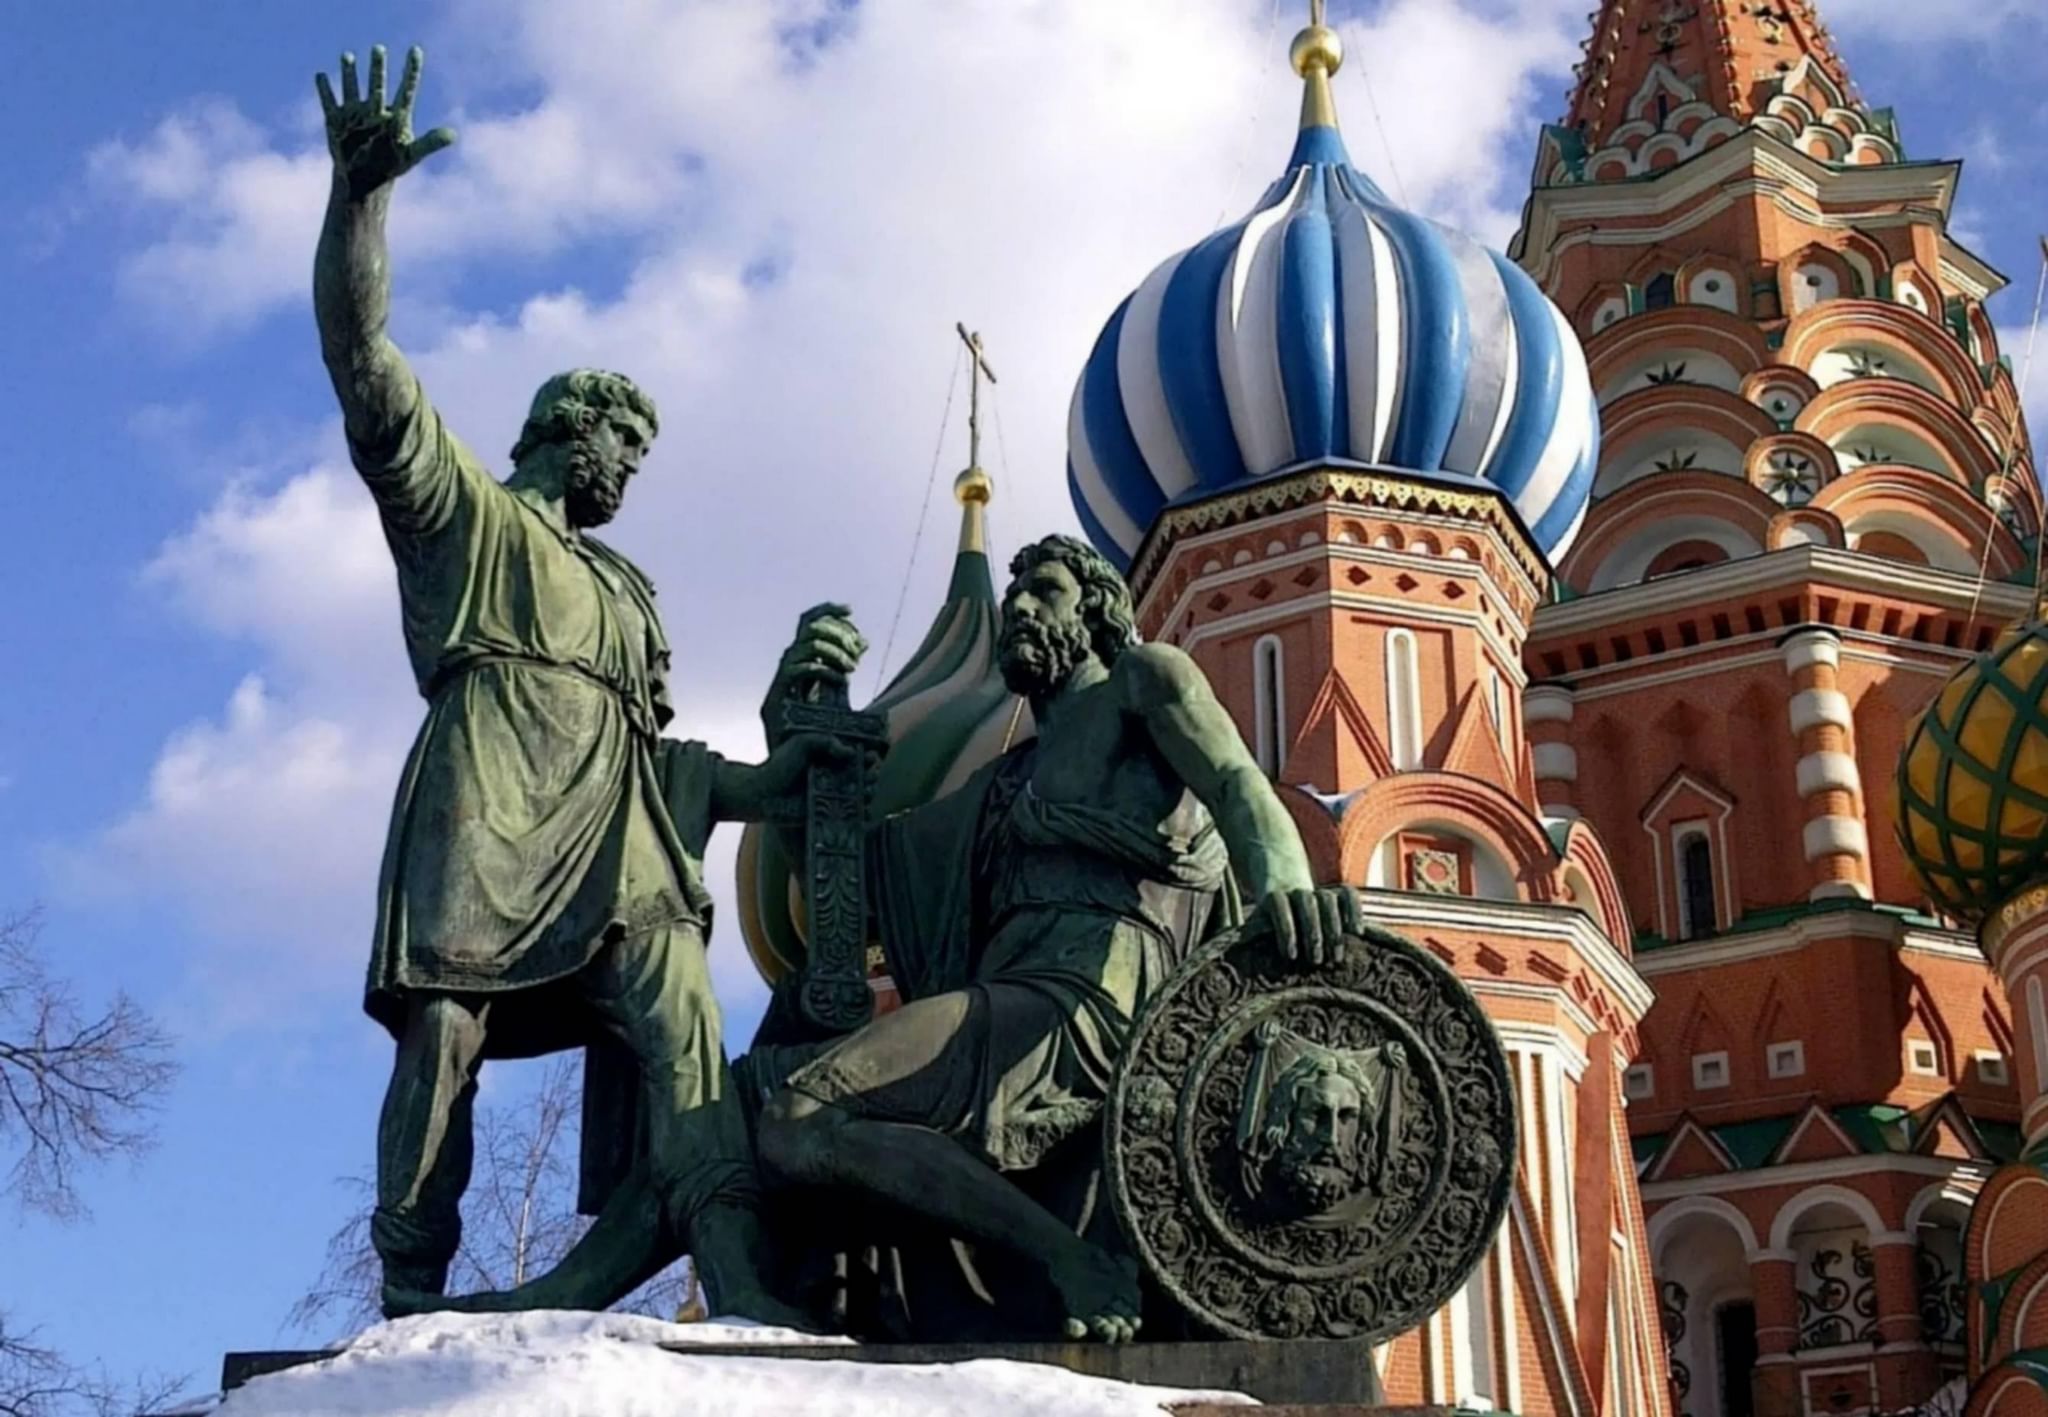 Памятник Минину и Пожарскому на красной площади в Москве